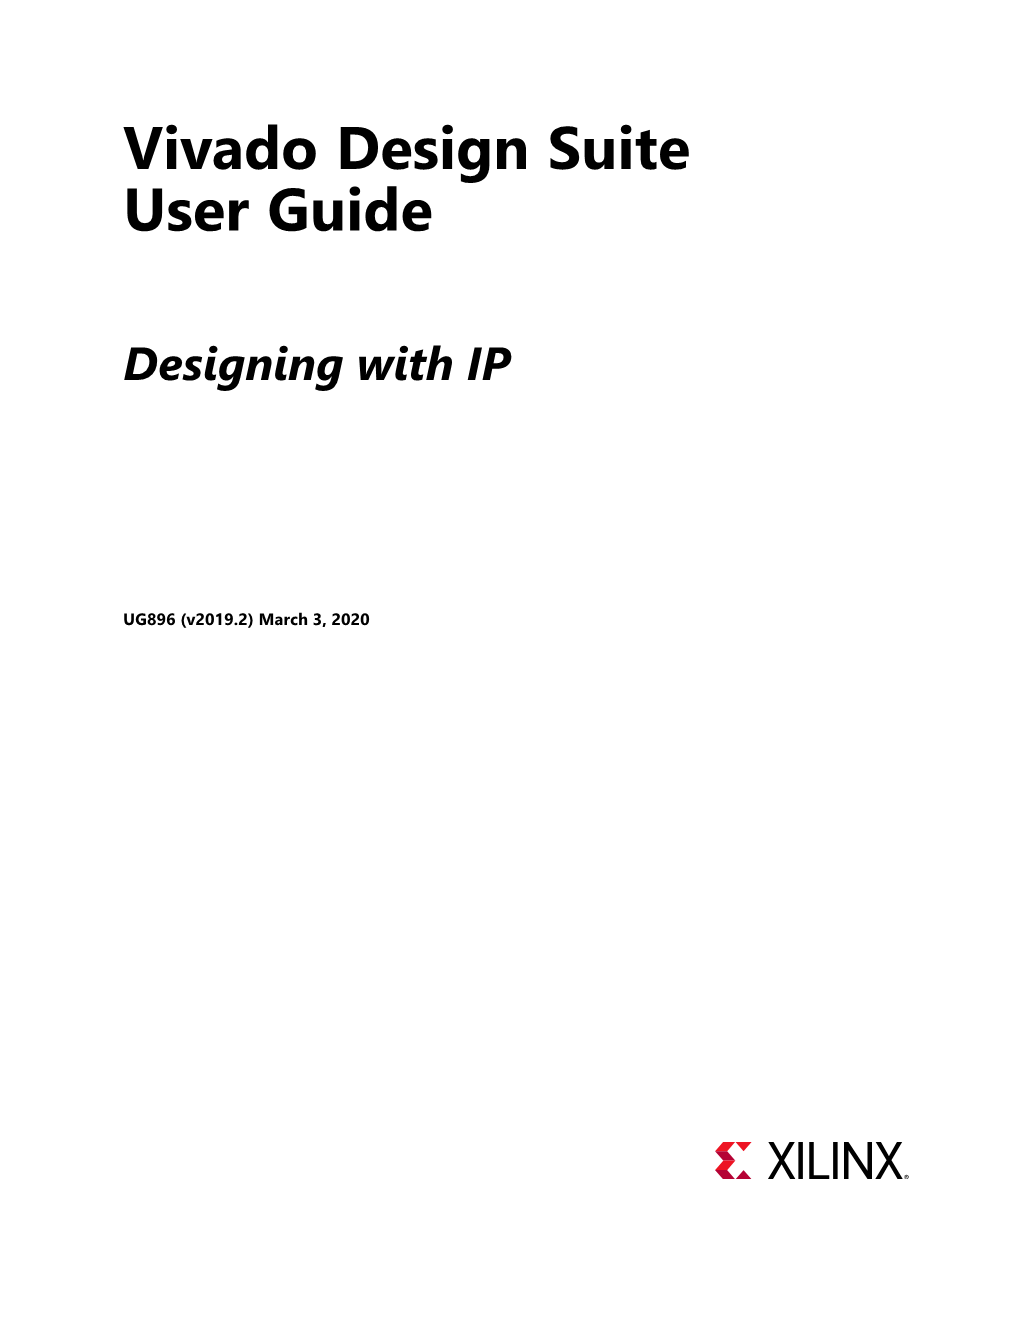 Vivado Design Suite User Guide